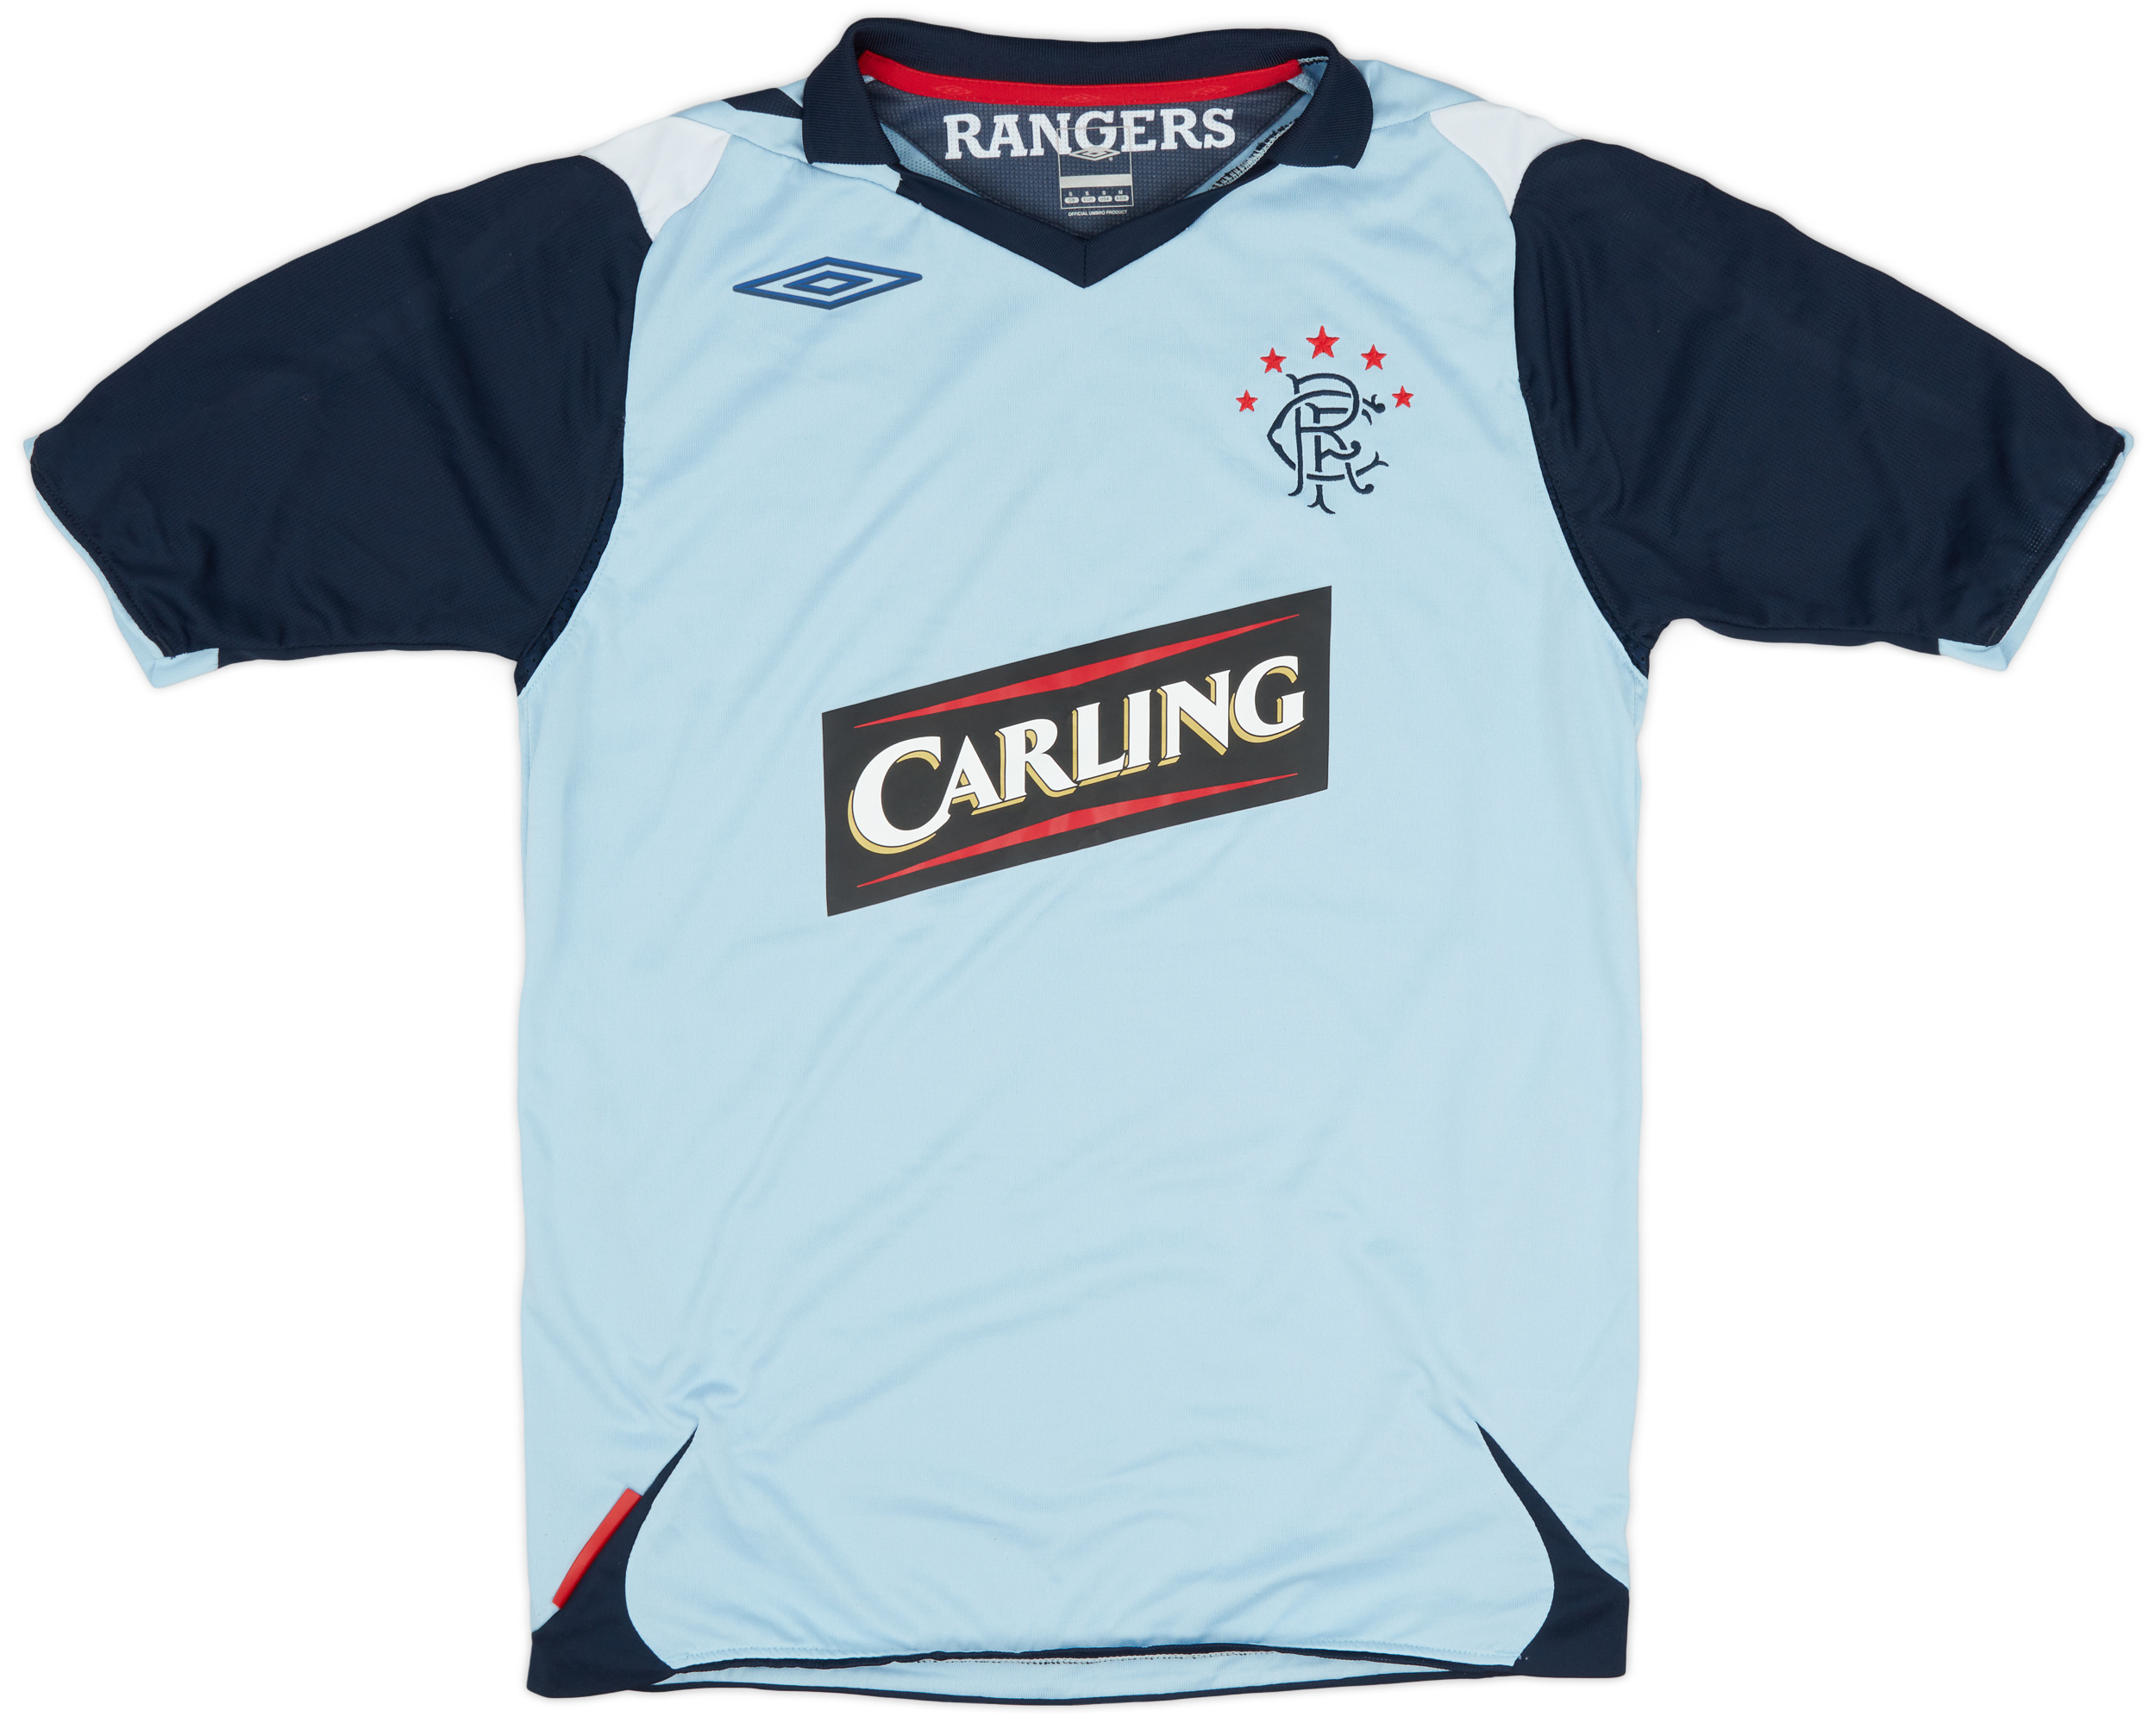 2006-07 Rangers Third Shirt - 8/10 - ()